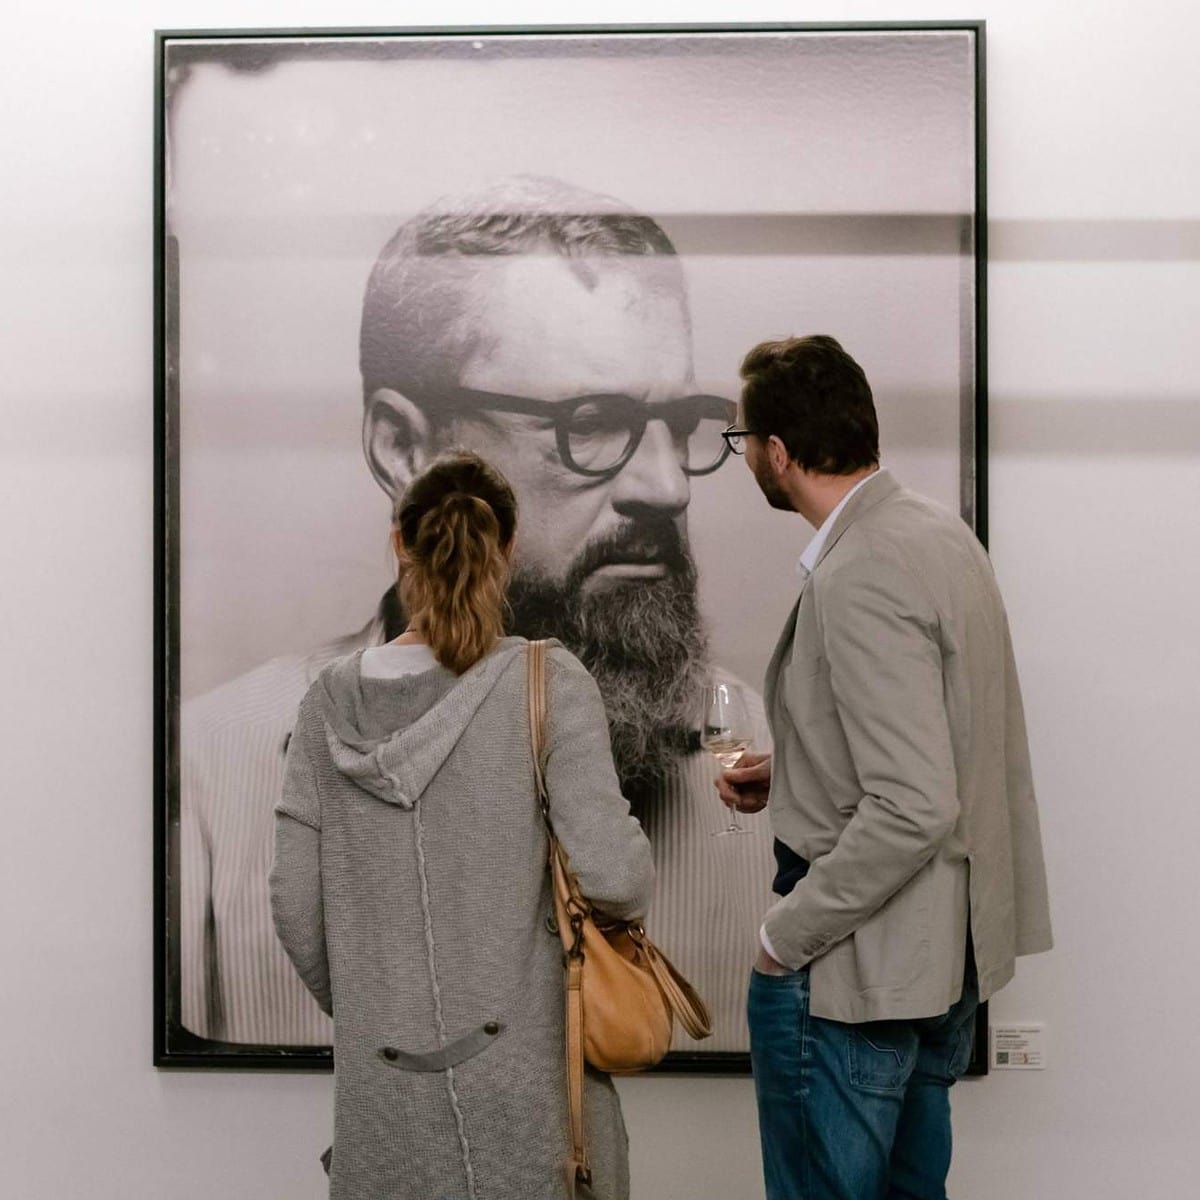 Finissage der Meinungsbilder Ausstellung mit Glasplattenportraits in Köln von dem Fotografen Valery Kloubert